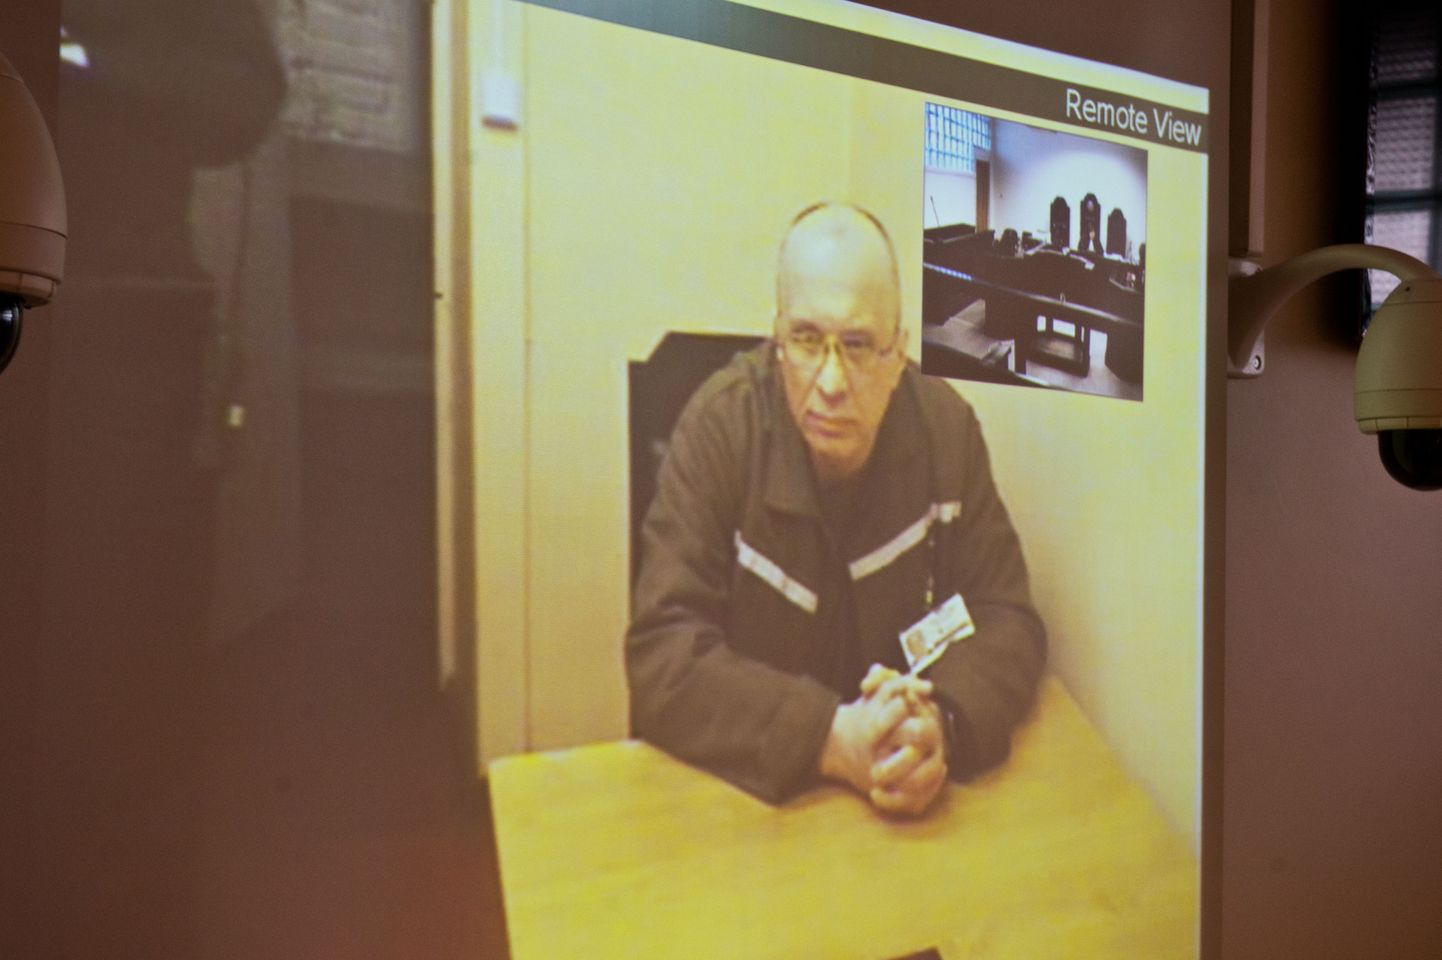 Harju maakohus arutas ka 2013. aasta mais eluaegse vangi Oleg Pjatnitski ennetähtaegset vabastamist. Pjatnitski osales istungil telesilla vahendusel Tallinna vanglast.